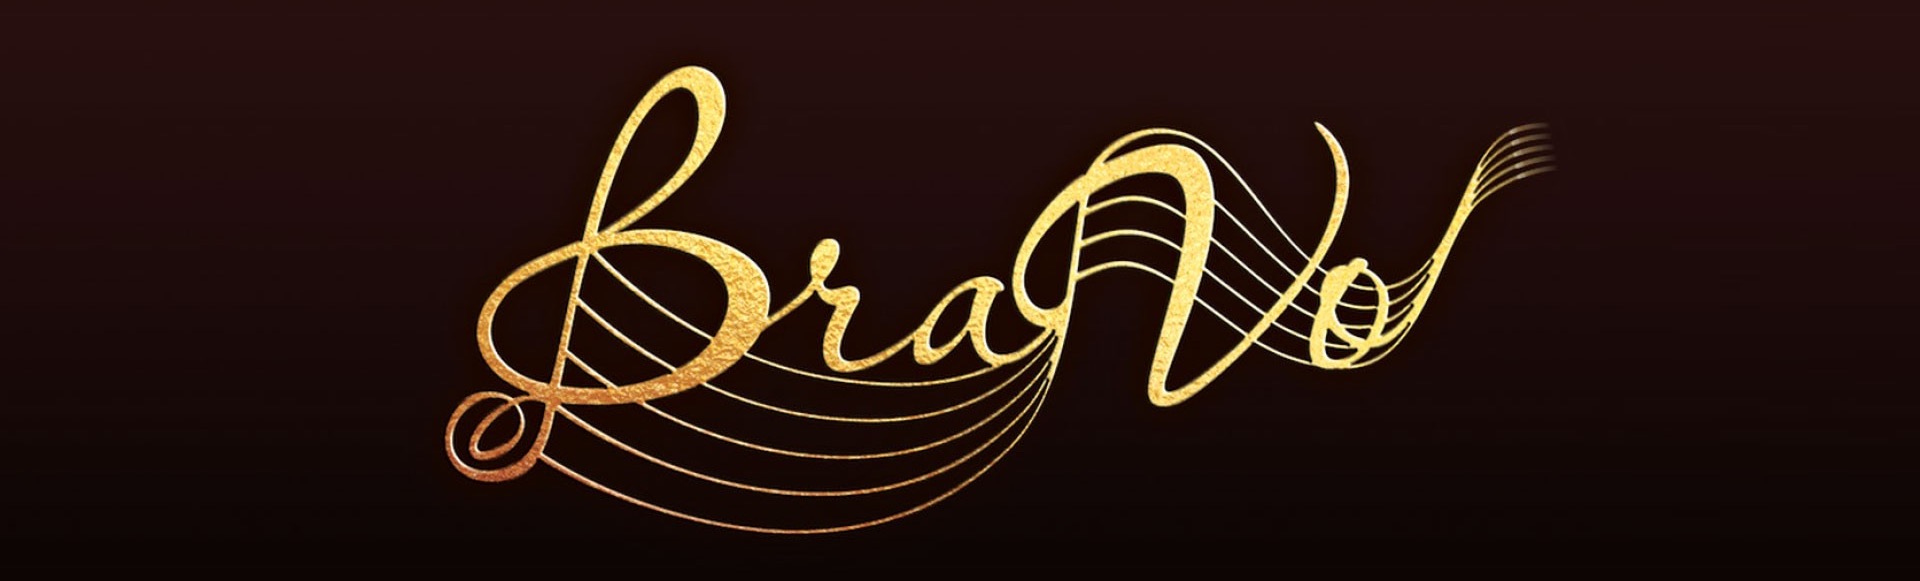 Церемония вручения Международной профессиональной музыкальной премии BraVo